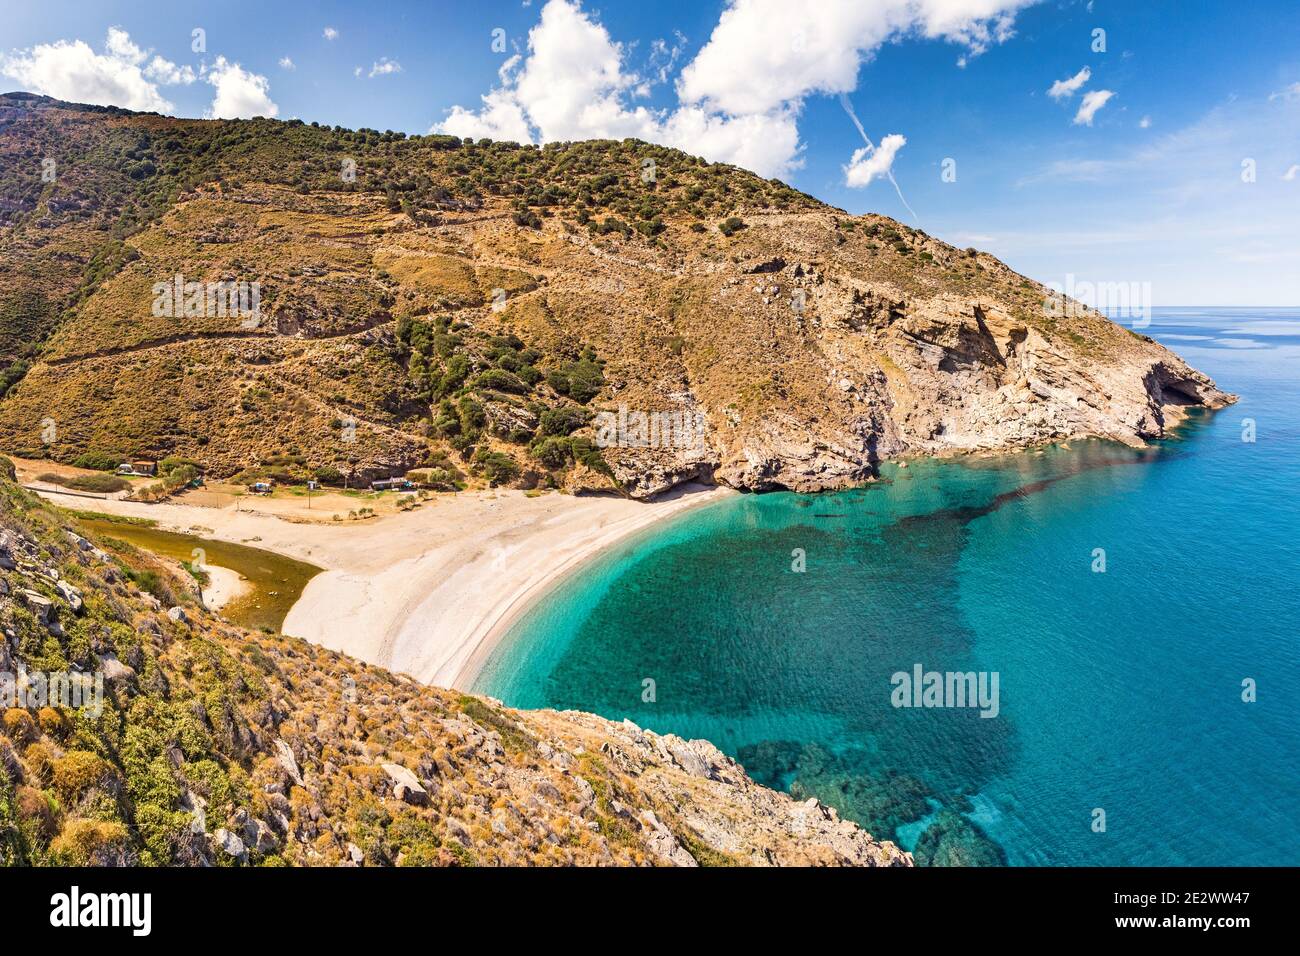 The beach Agios Dimitrios in Evia island, Greece Stock Photo - Alamy